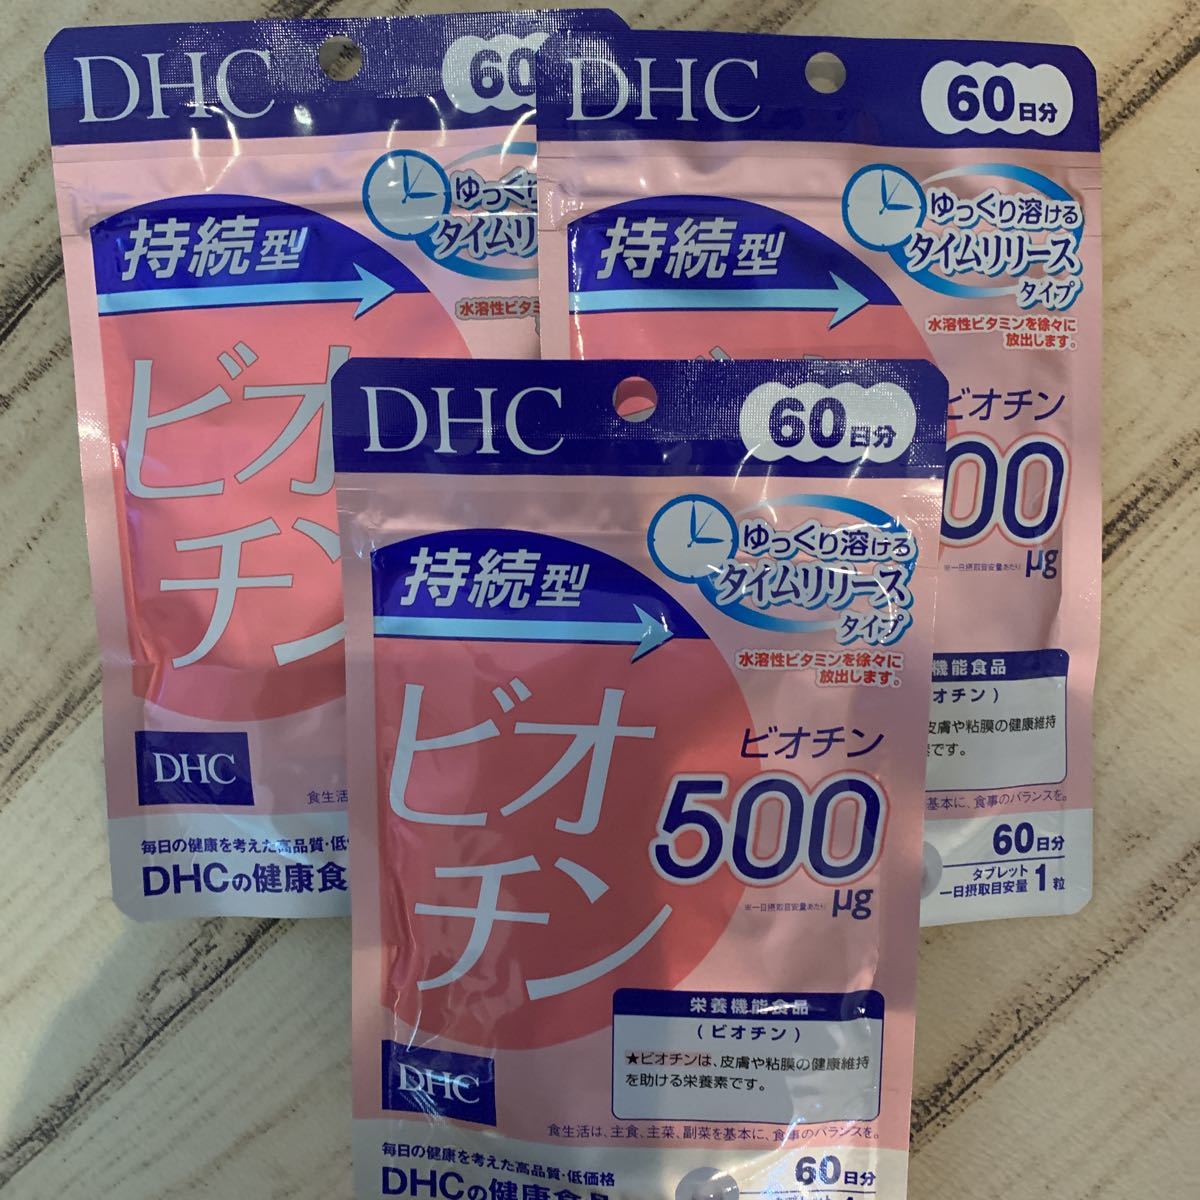 DHC持続型ビオチン60日分60粒 3袋